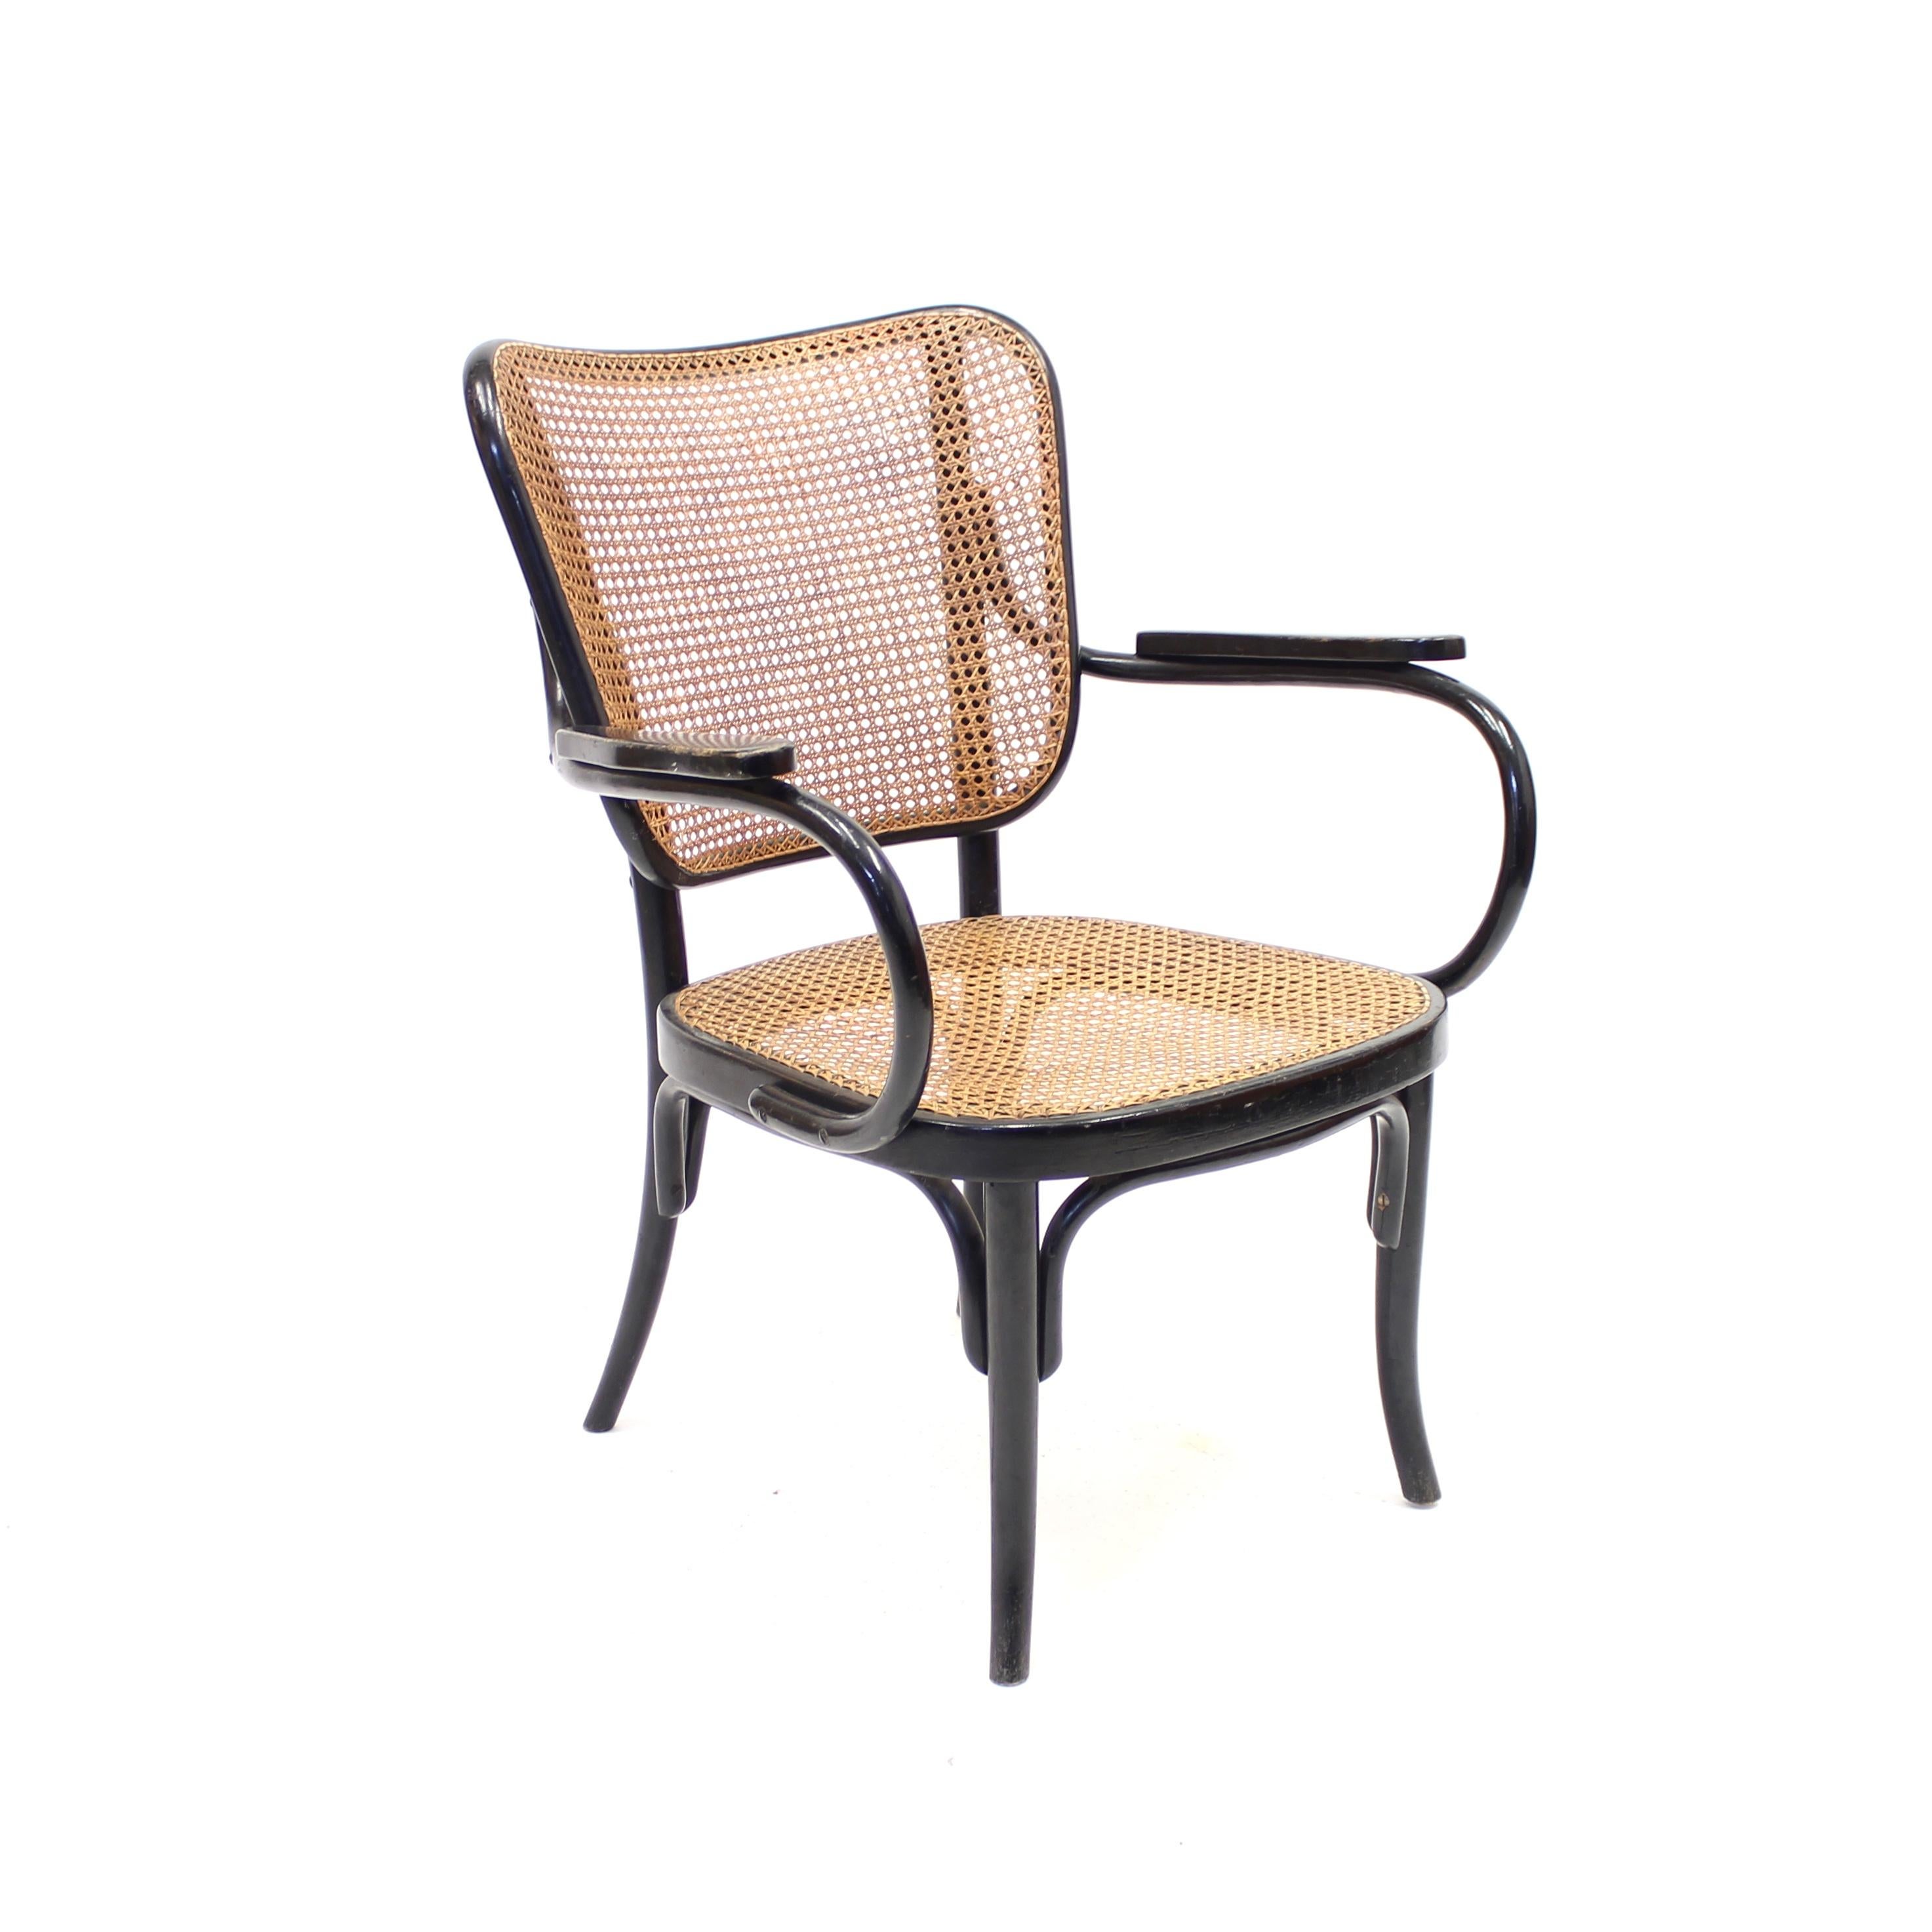 Rare fauteuil / chaise longue conçu par Eberhard Krauss pour Thonet en 1930 pour l'exposition 